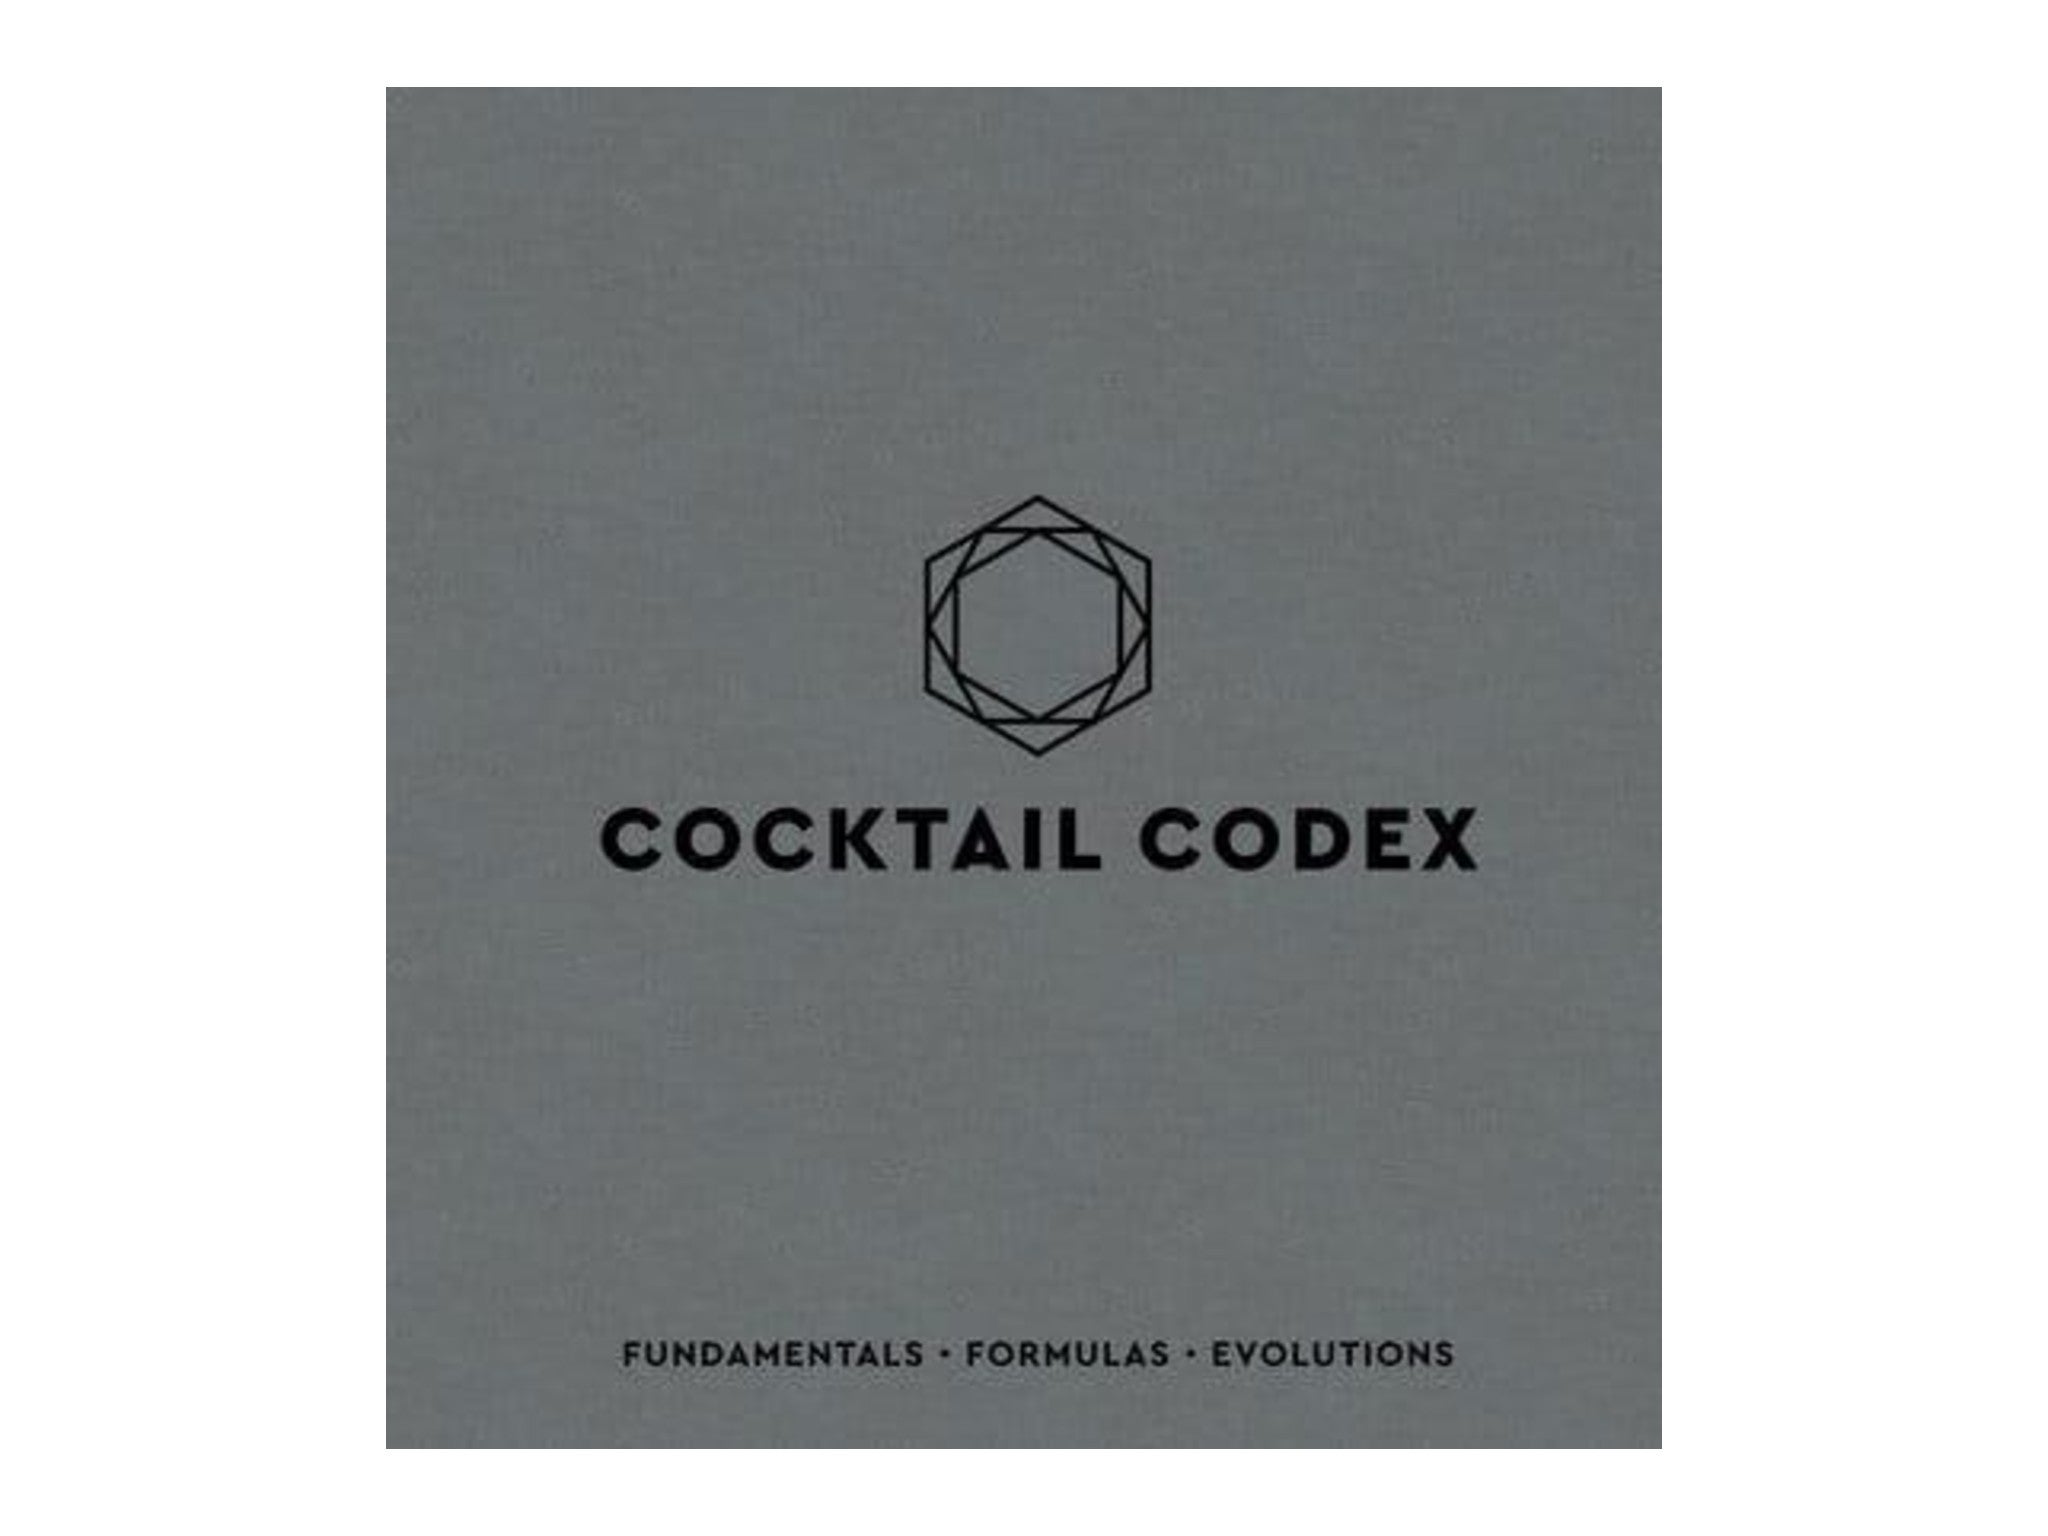 ‘Cocktail Codex’ by Alex Day, Nick Fauchald, David Kaplan indybest.jpeg